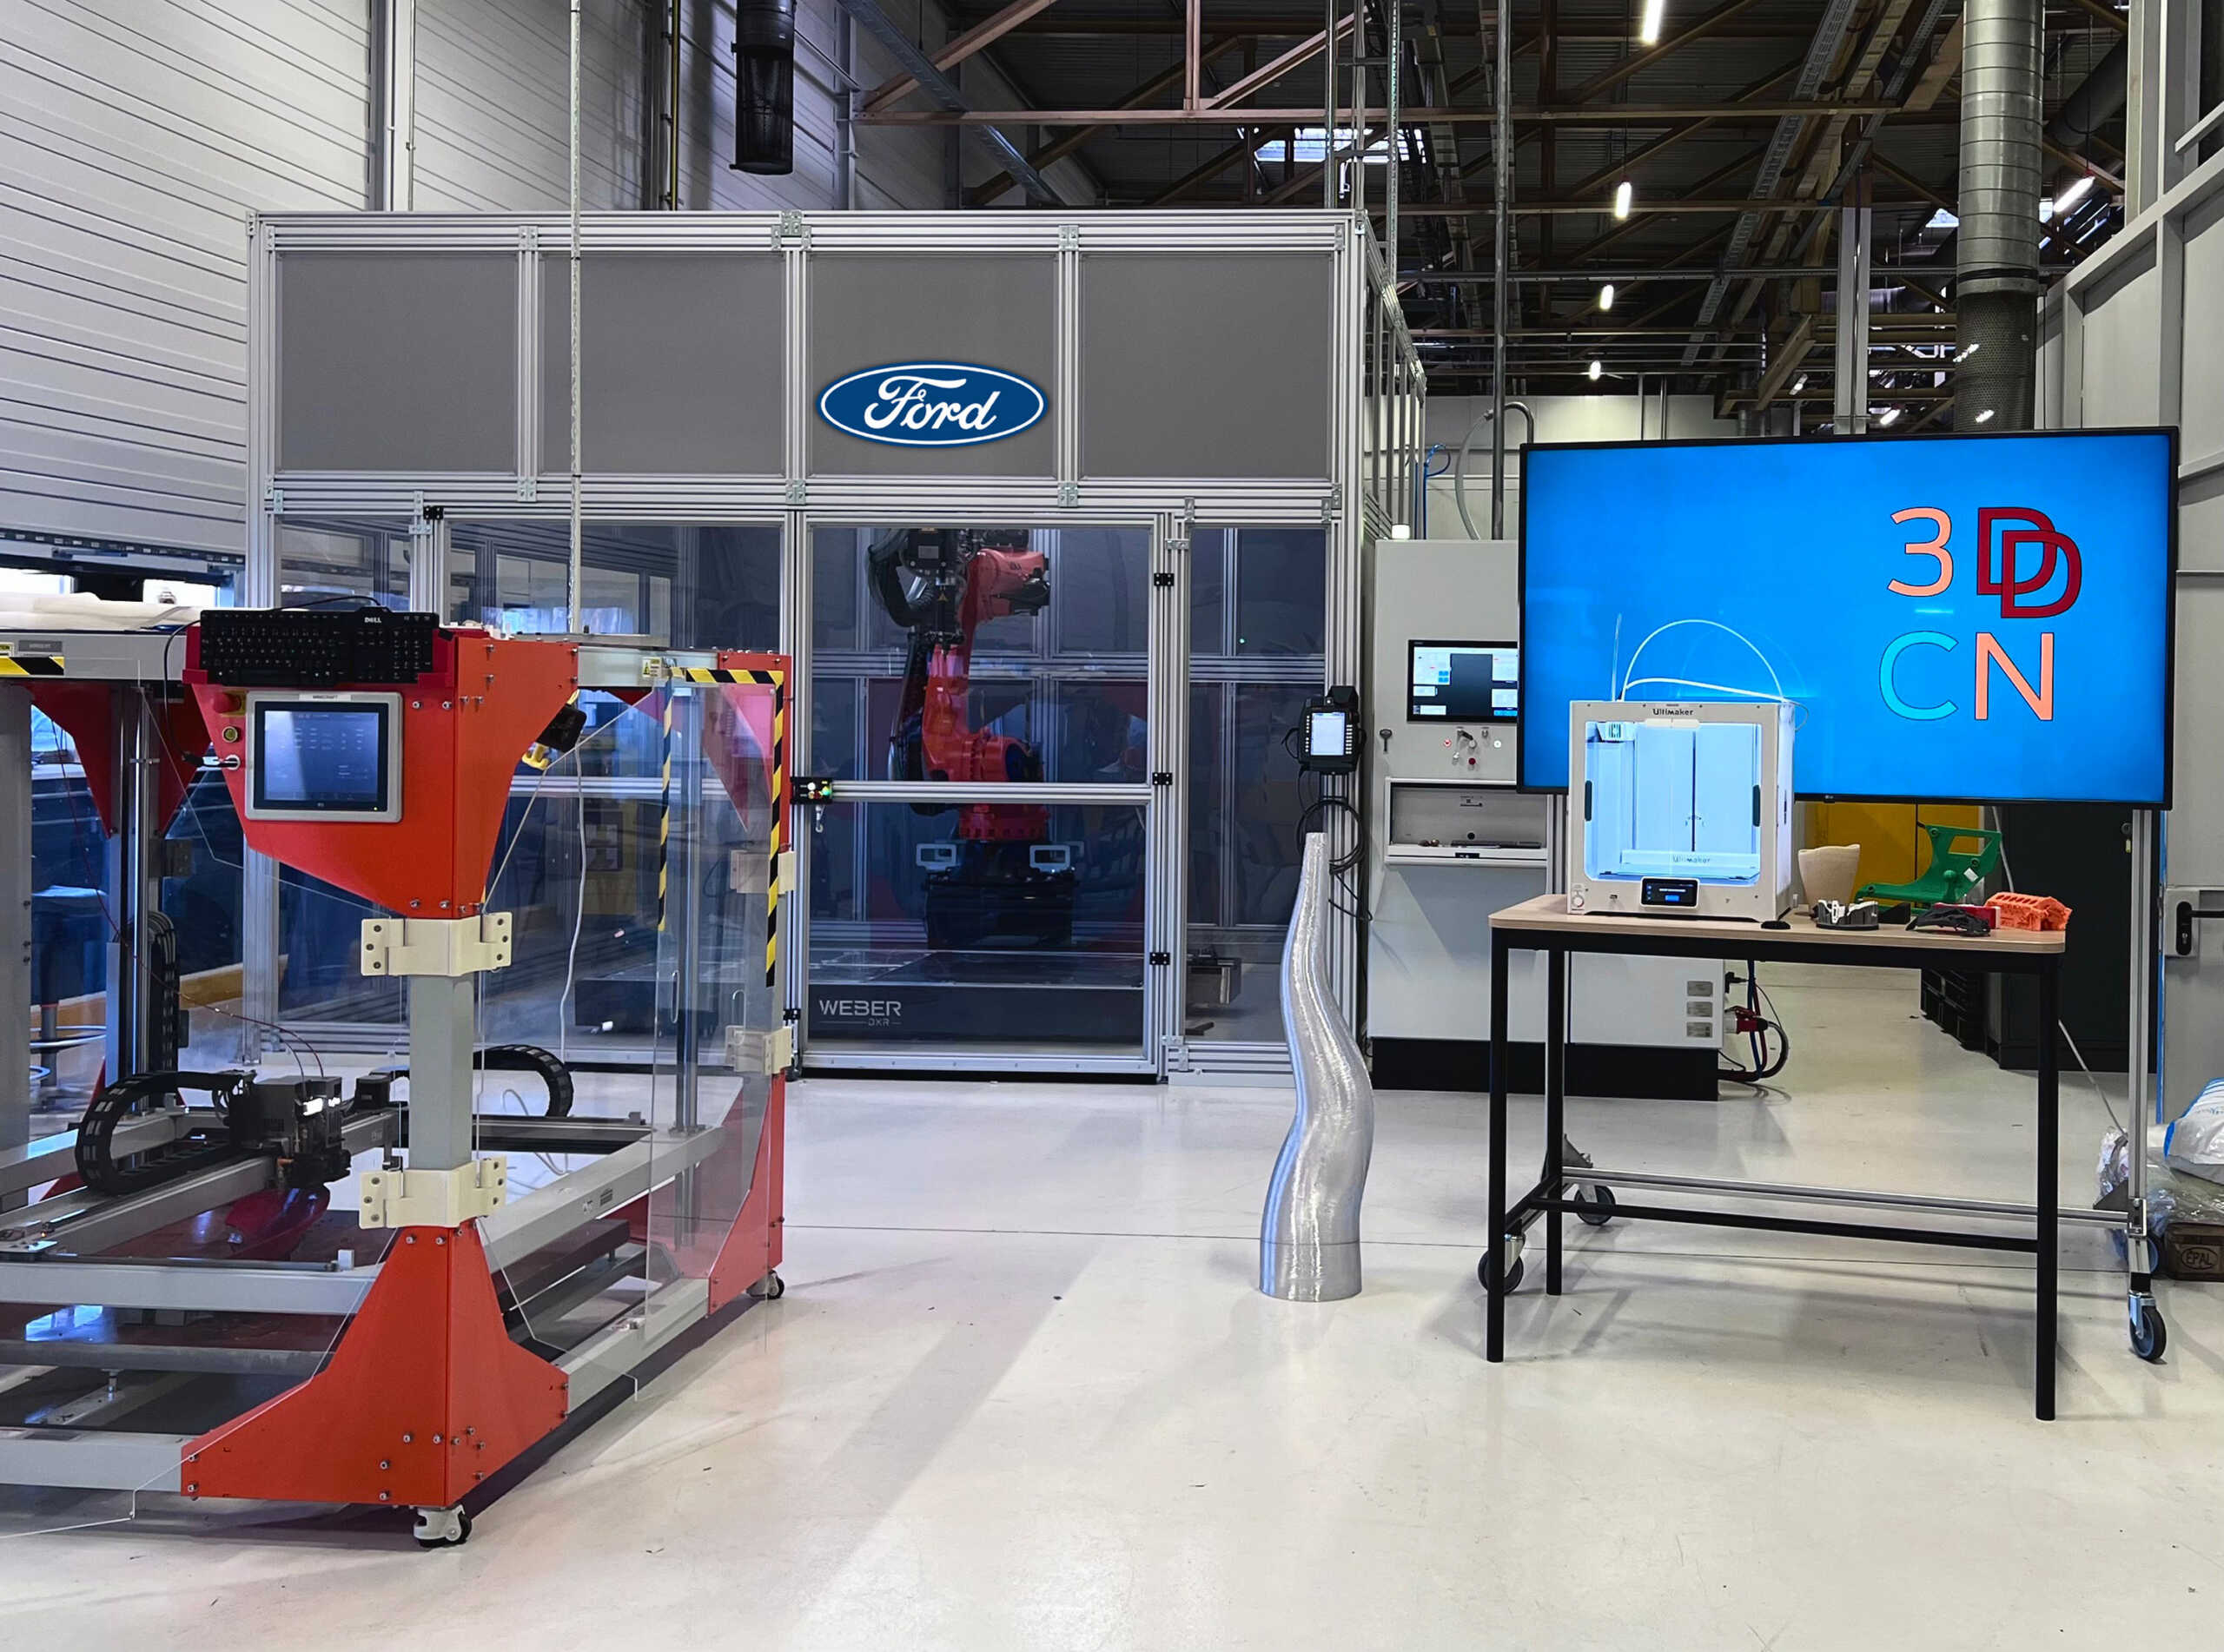 Η Ford εγκαινιάζει ένα νέο κέντρο τρισδιάστατης εκτύπωσης